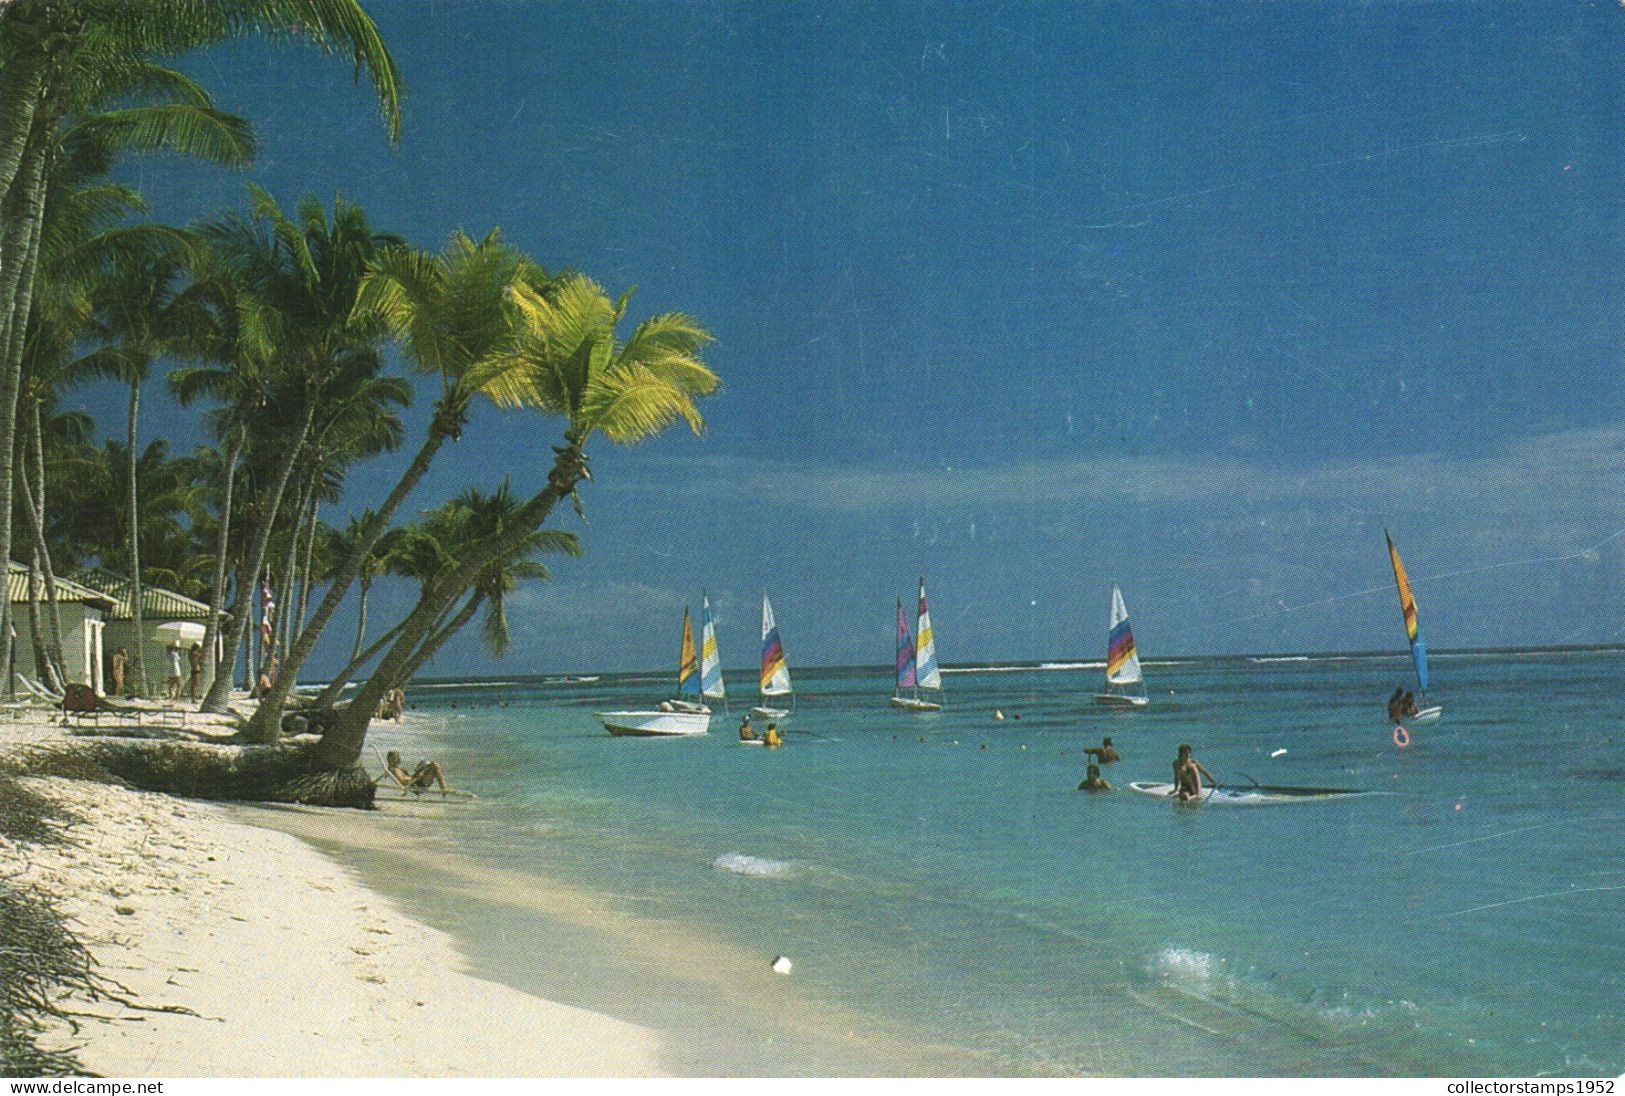 PUNTA CANA, BEACH, PLAGE, BOATS, SURF, DOMINICAN REPUBLIC - Dominicaine (République)